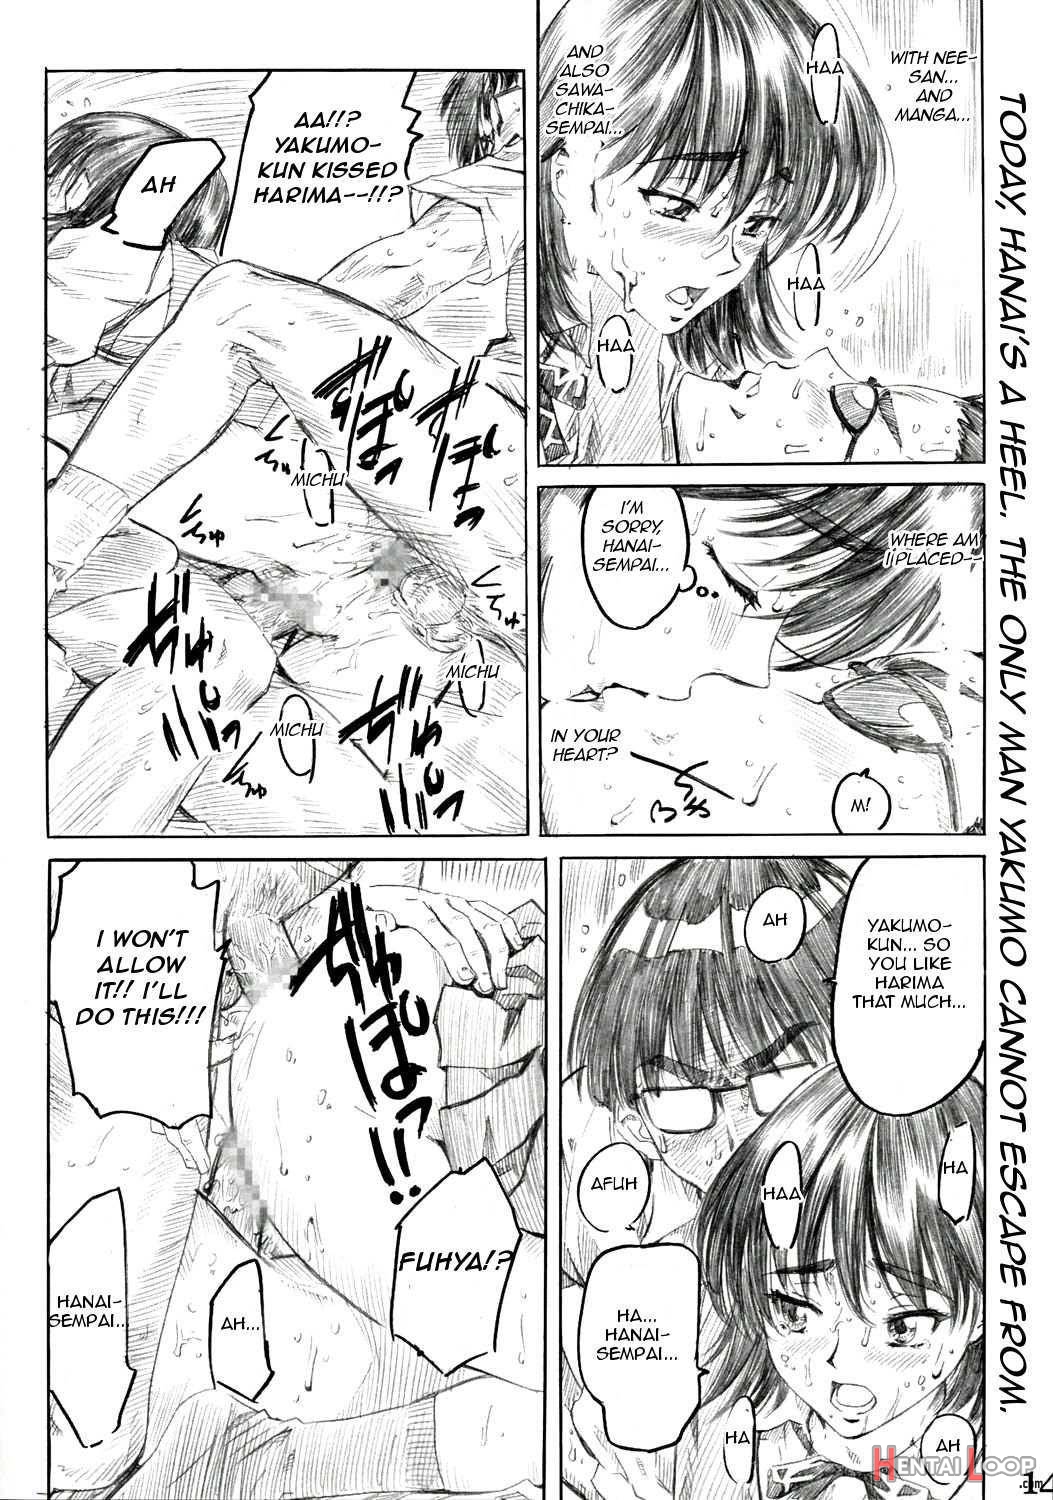 Harima no Manga Michi Vol.2 page 11